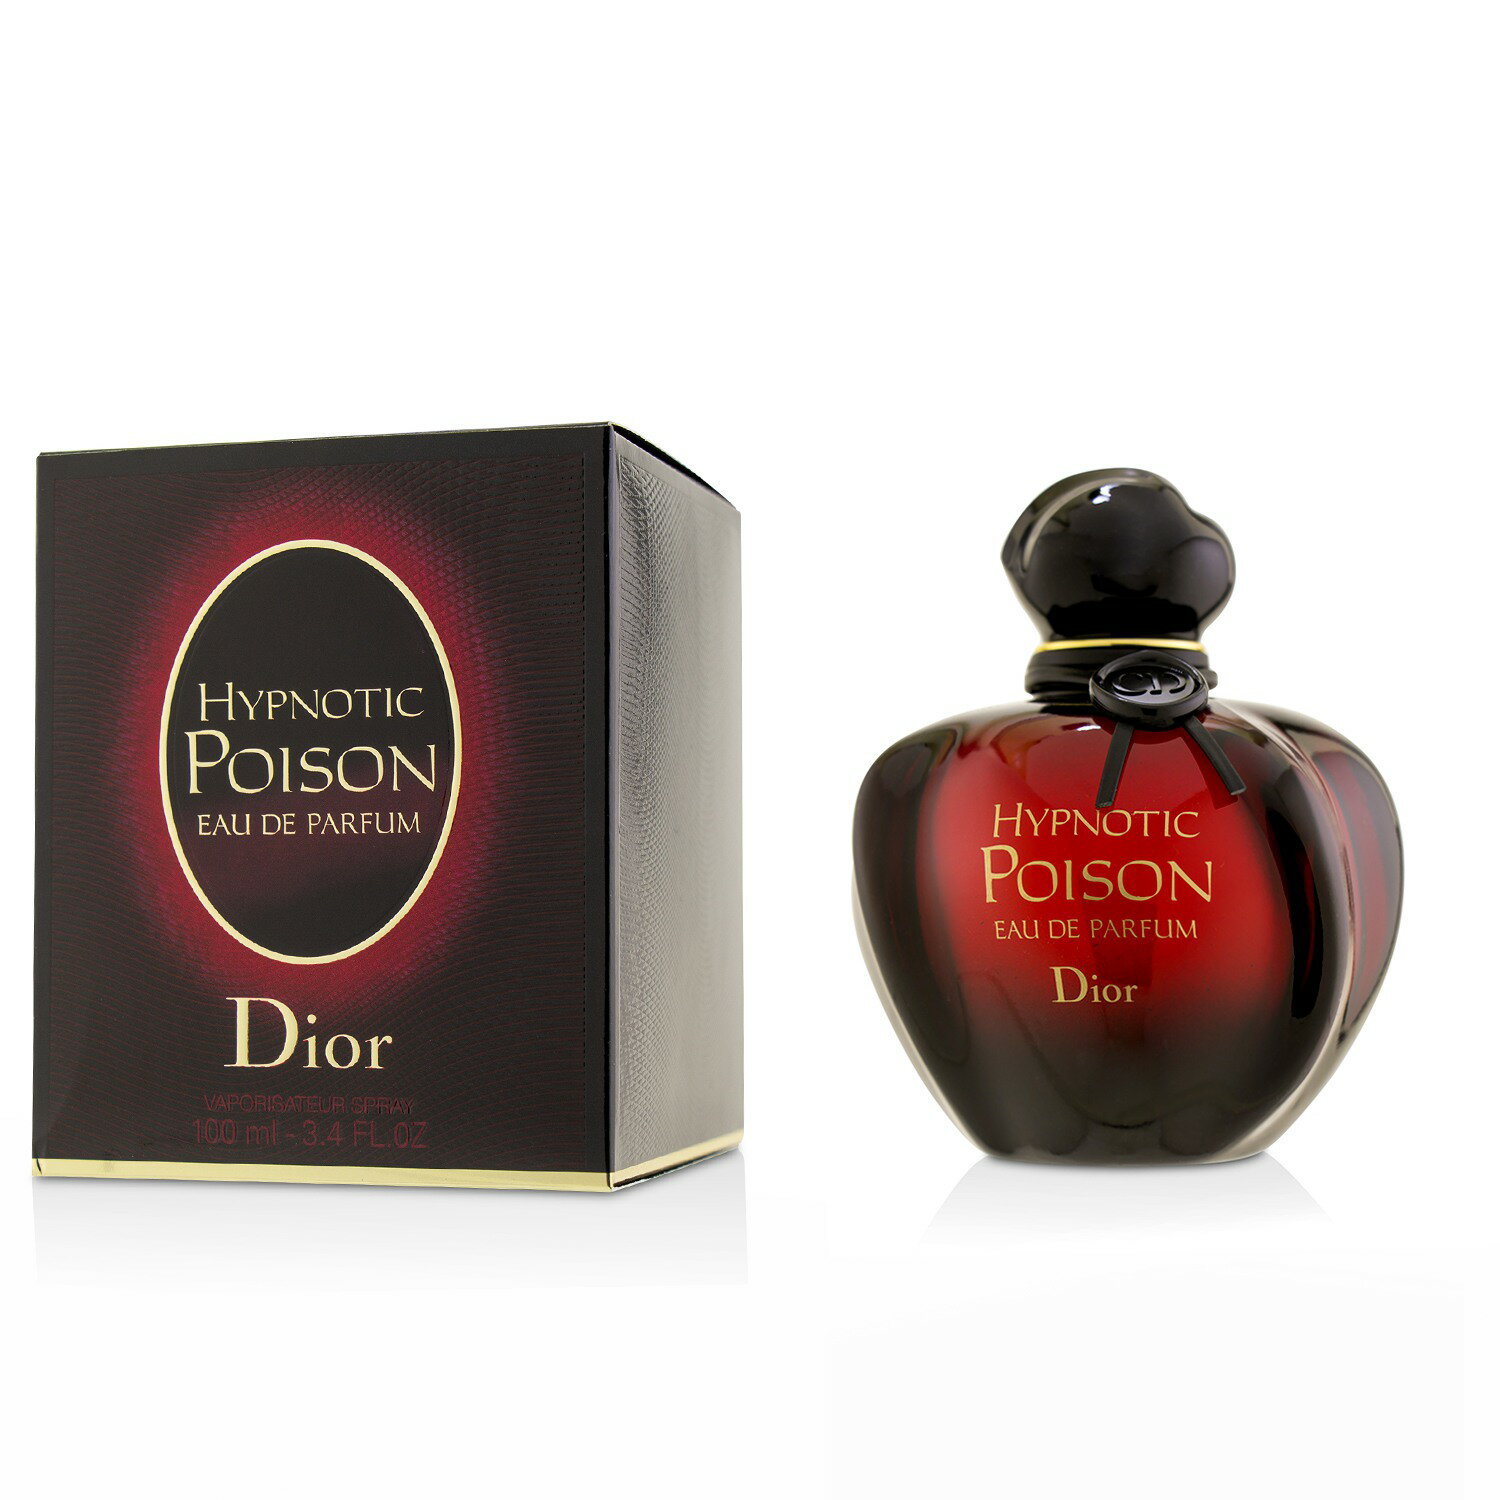 迪奧 Christian Dior - Hypnotic Poison 紅毒藥香水